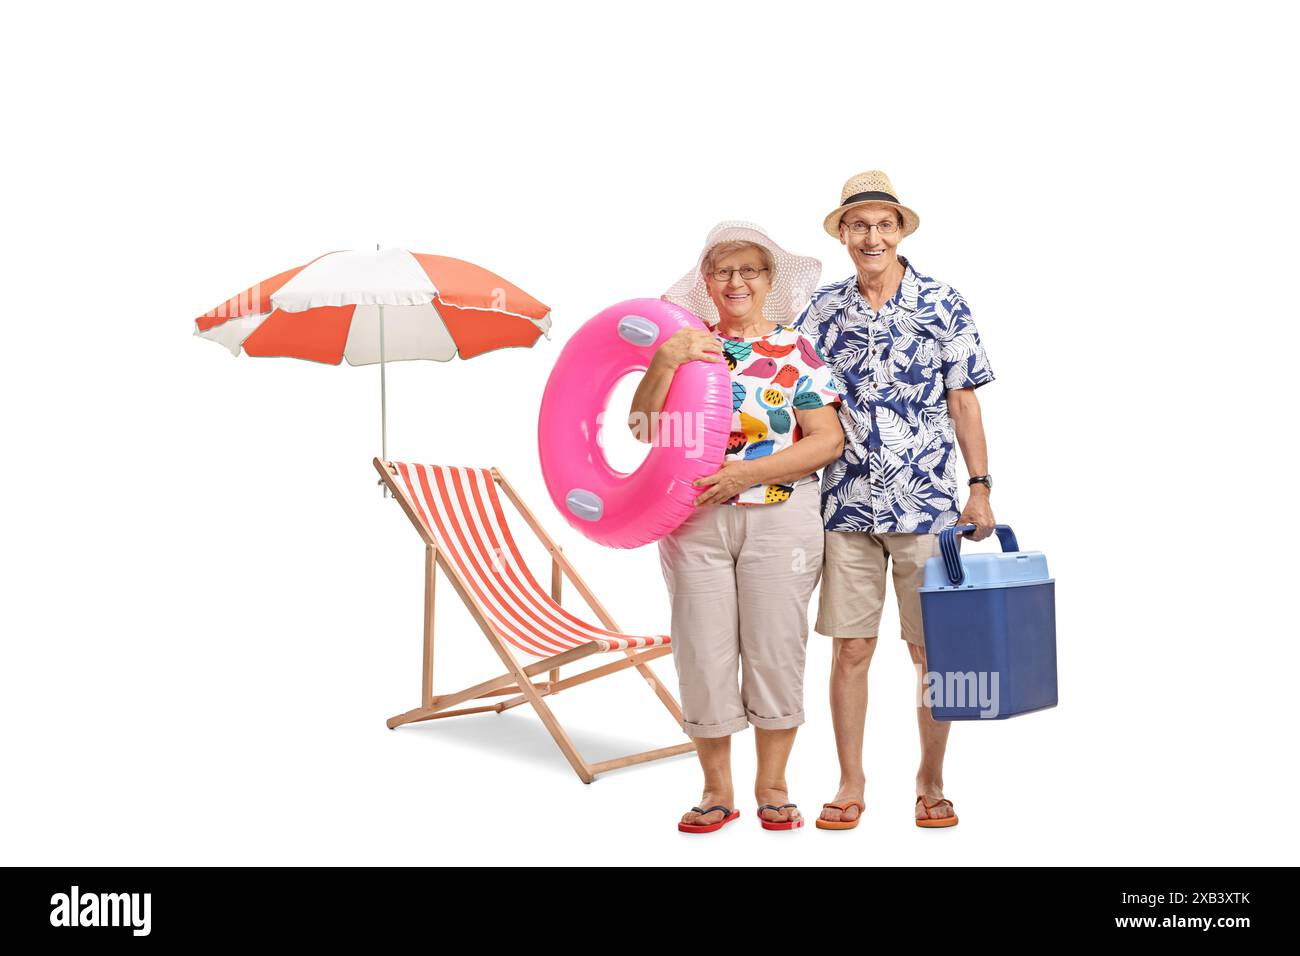 Ritratto a figura intera di turisti anziani con un anello da nuoto e una scatola di raffreddamento accanto a una sedia da spiaggia isolata su sfondo bianco Foto Stock